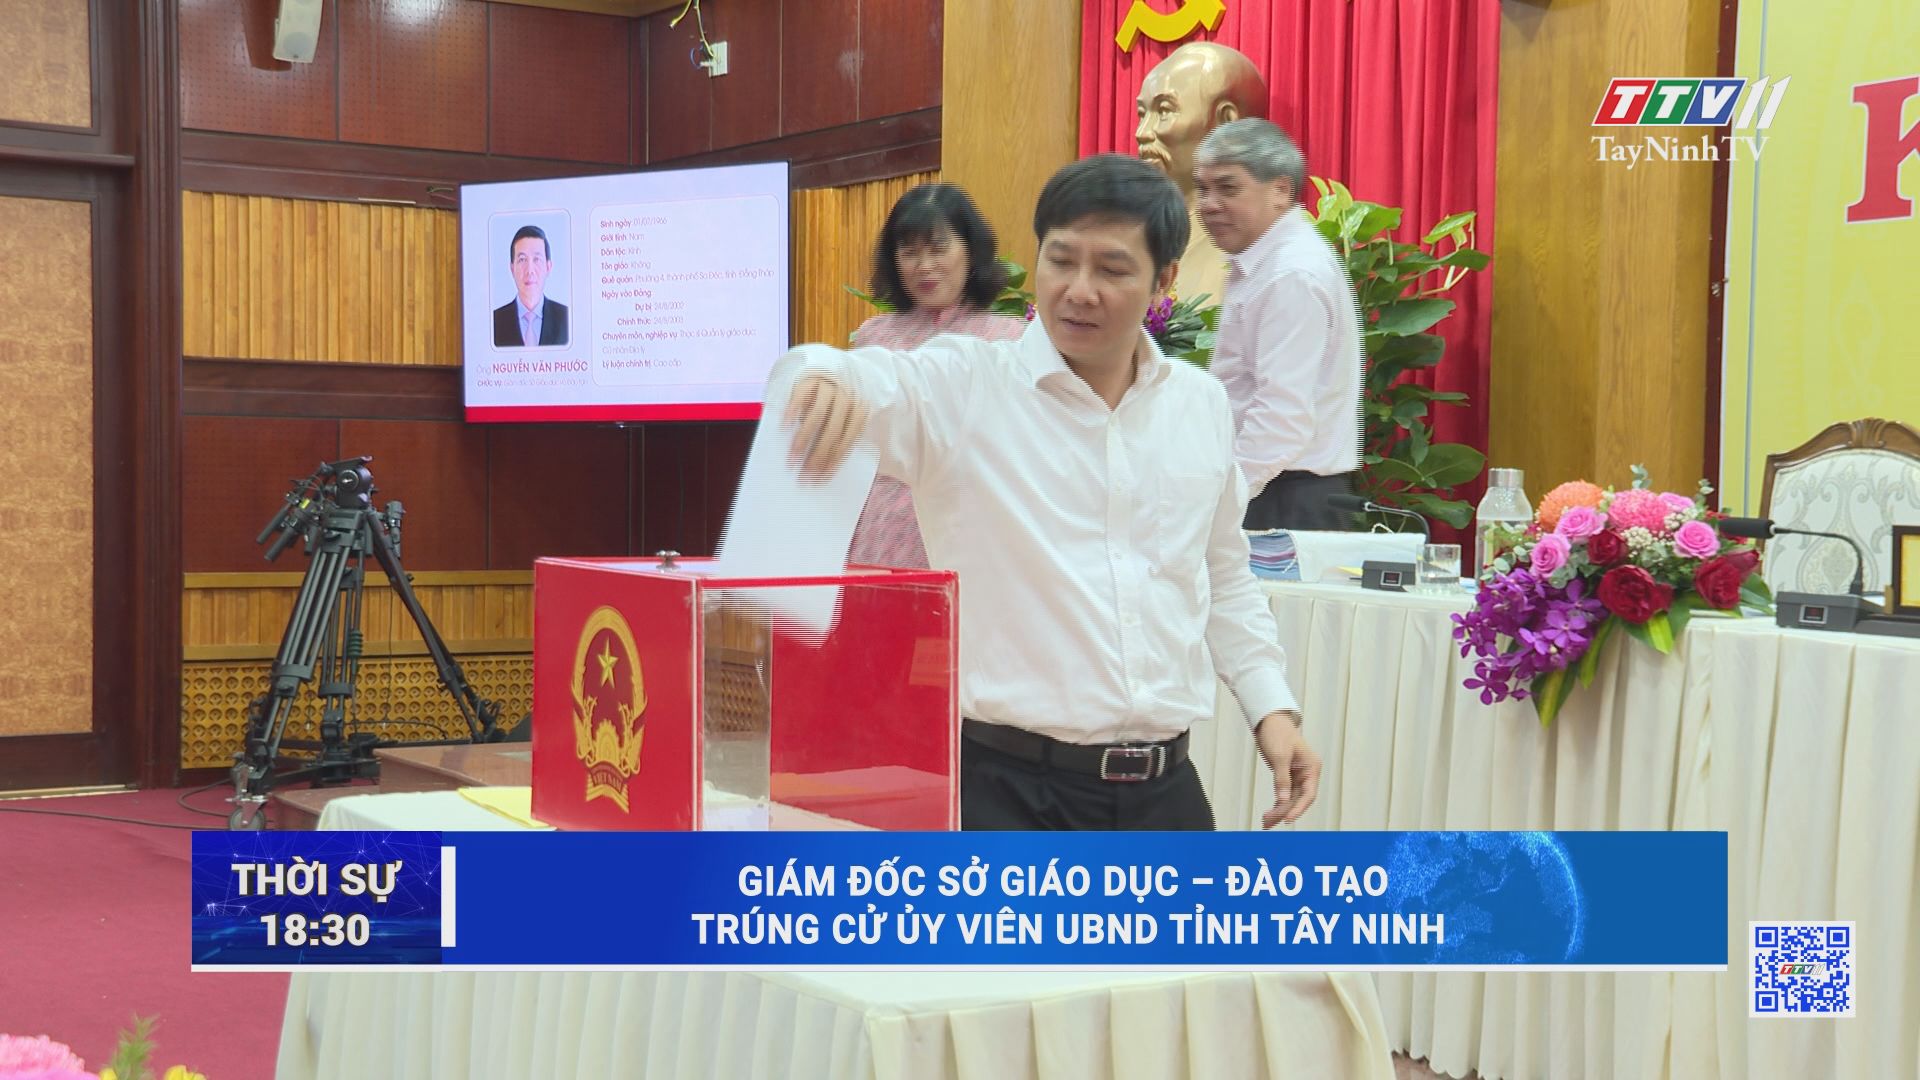 Giám đốc Sở Giáo dục - Đào tạo trúng cử Ủy viên UBND tỉnh Tây Ninh | TayNinhTV